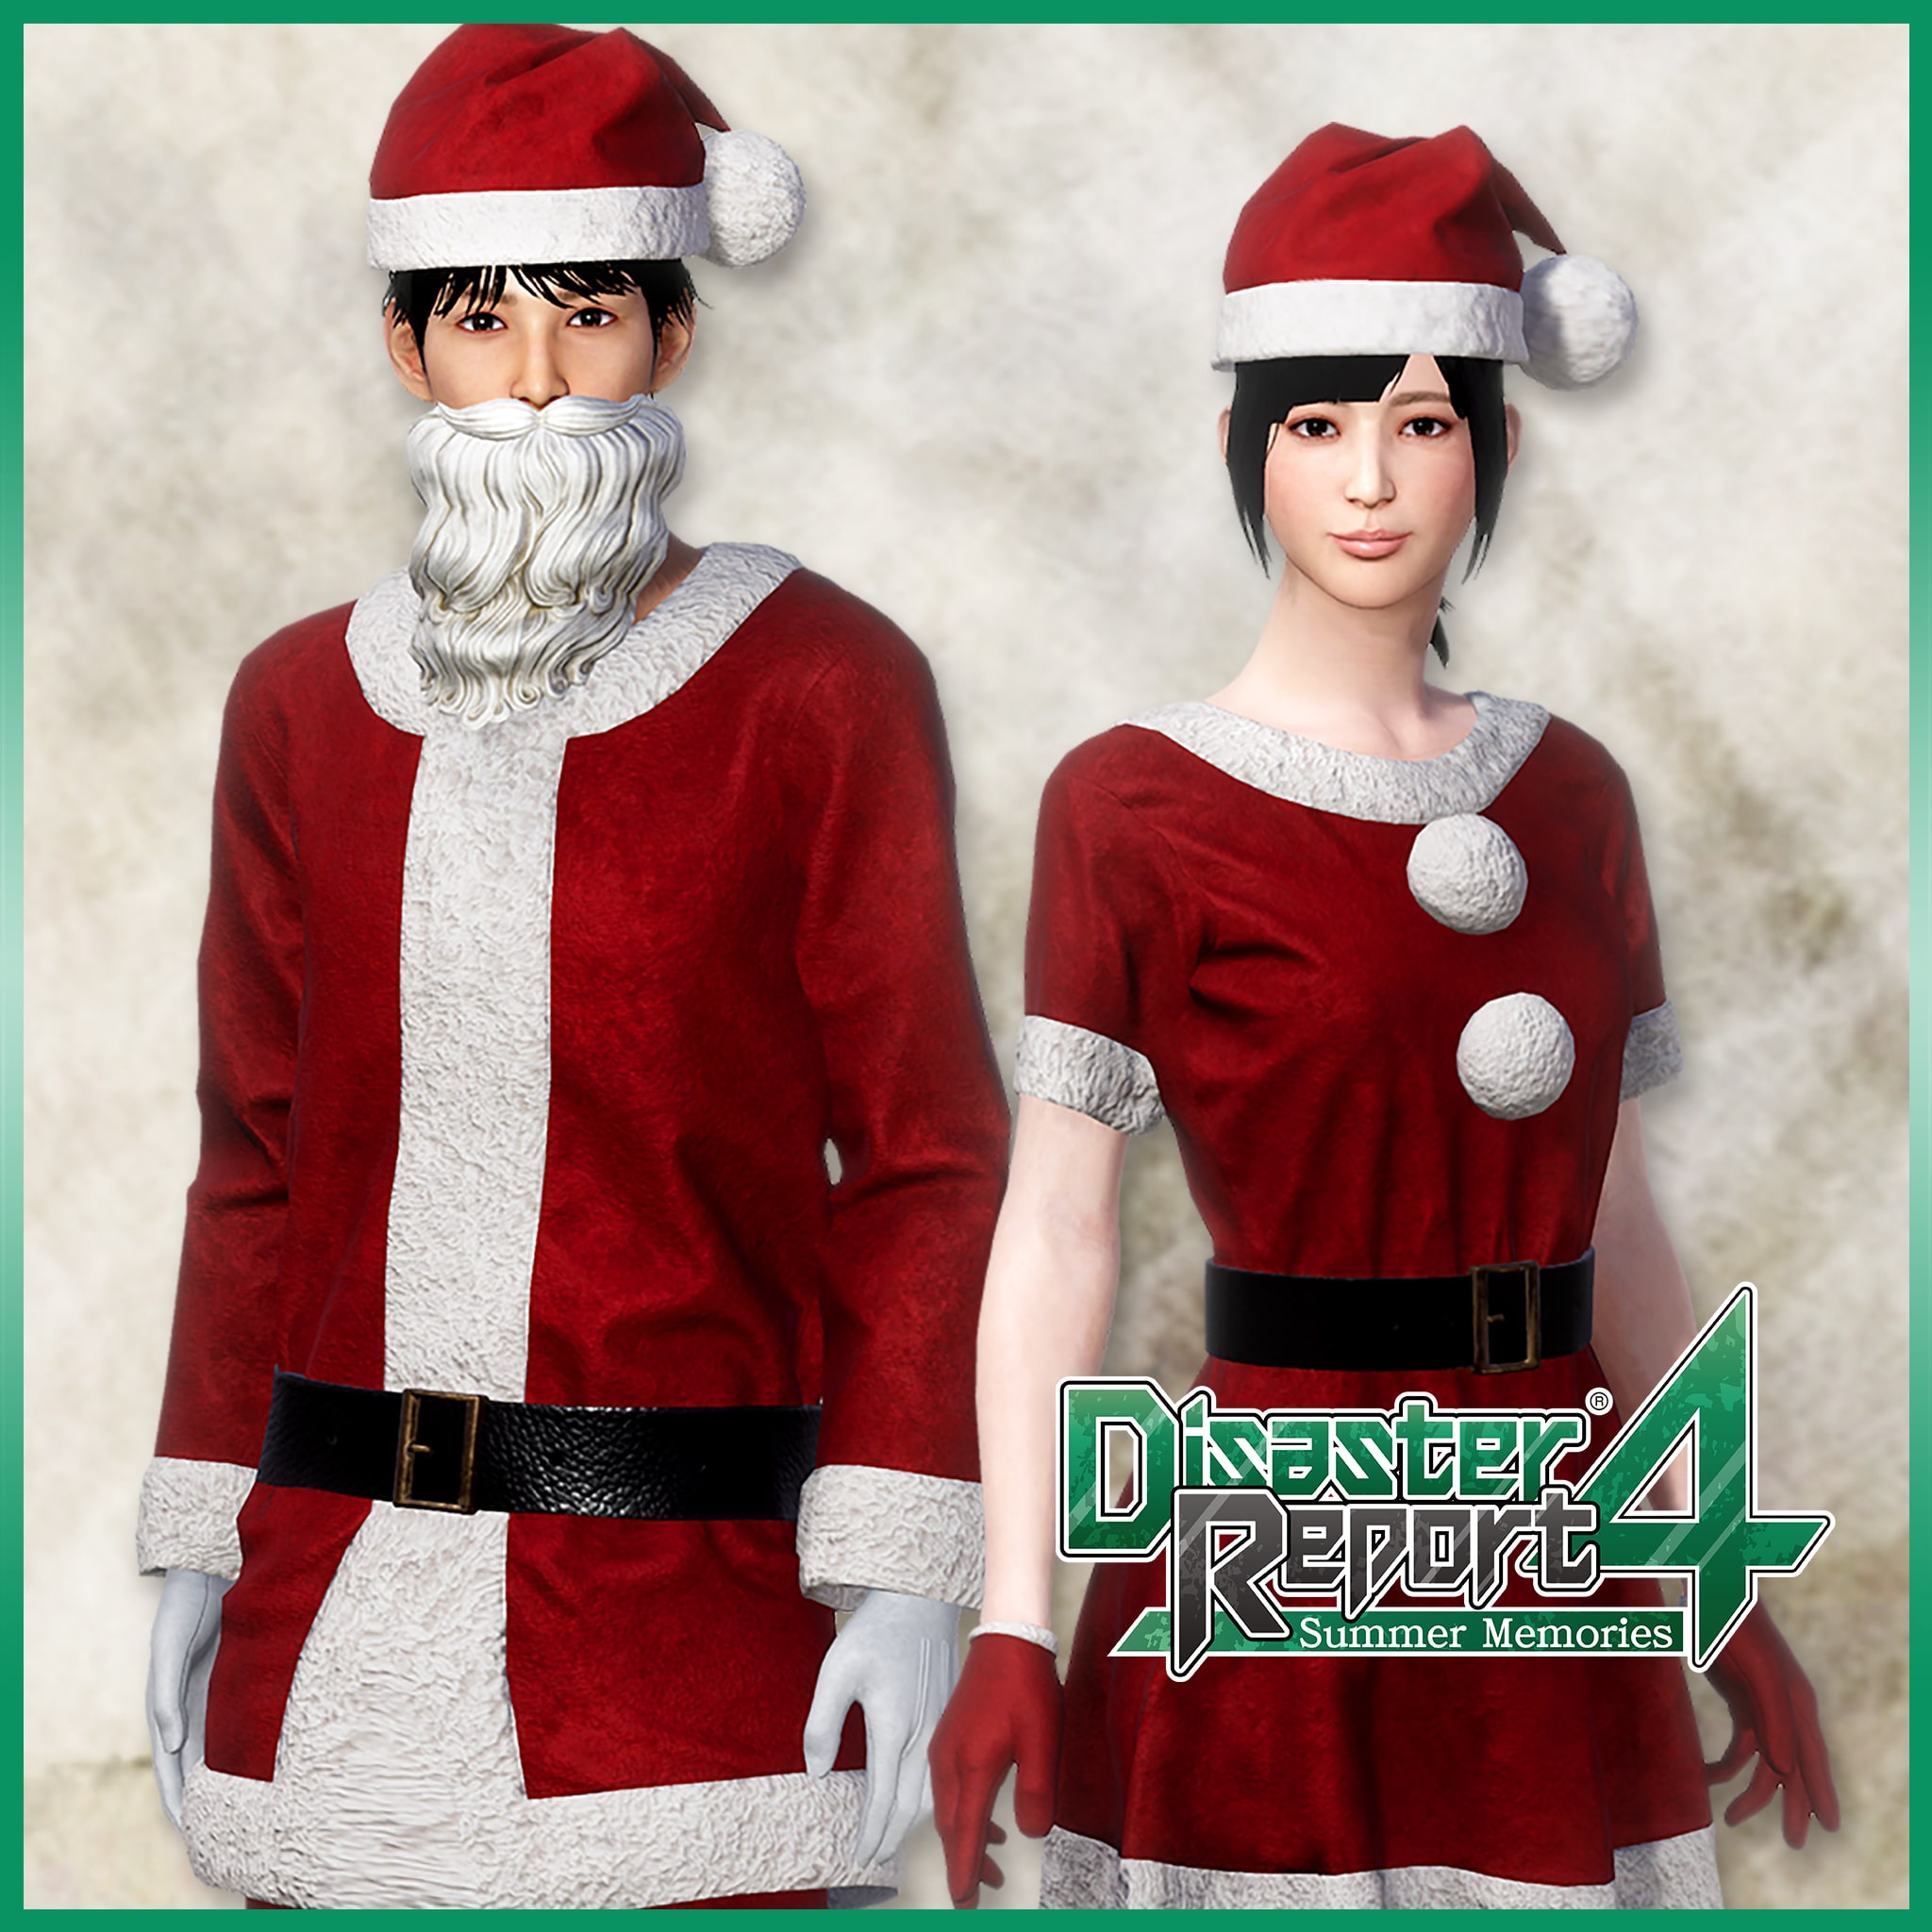 Disaster Report 4 - Santa Costume